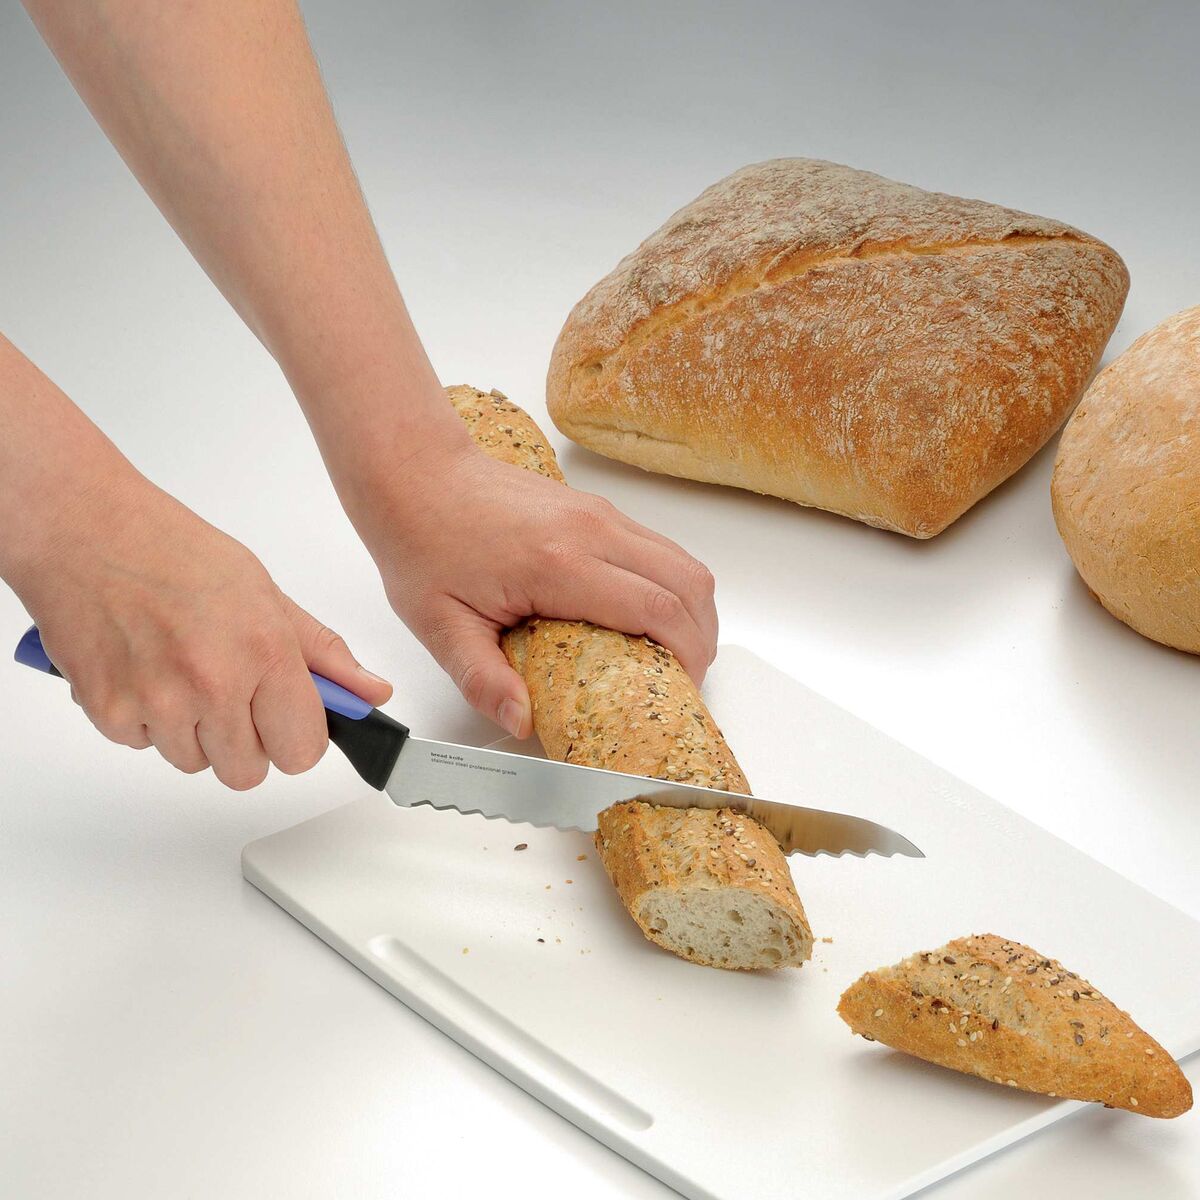 סכין לחם